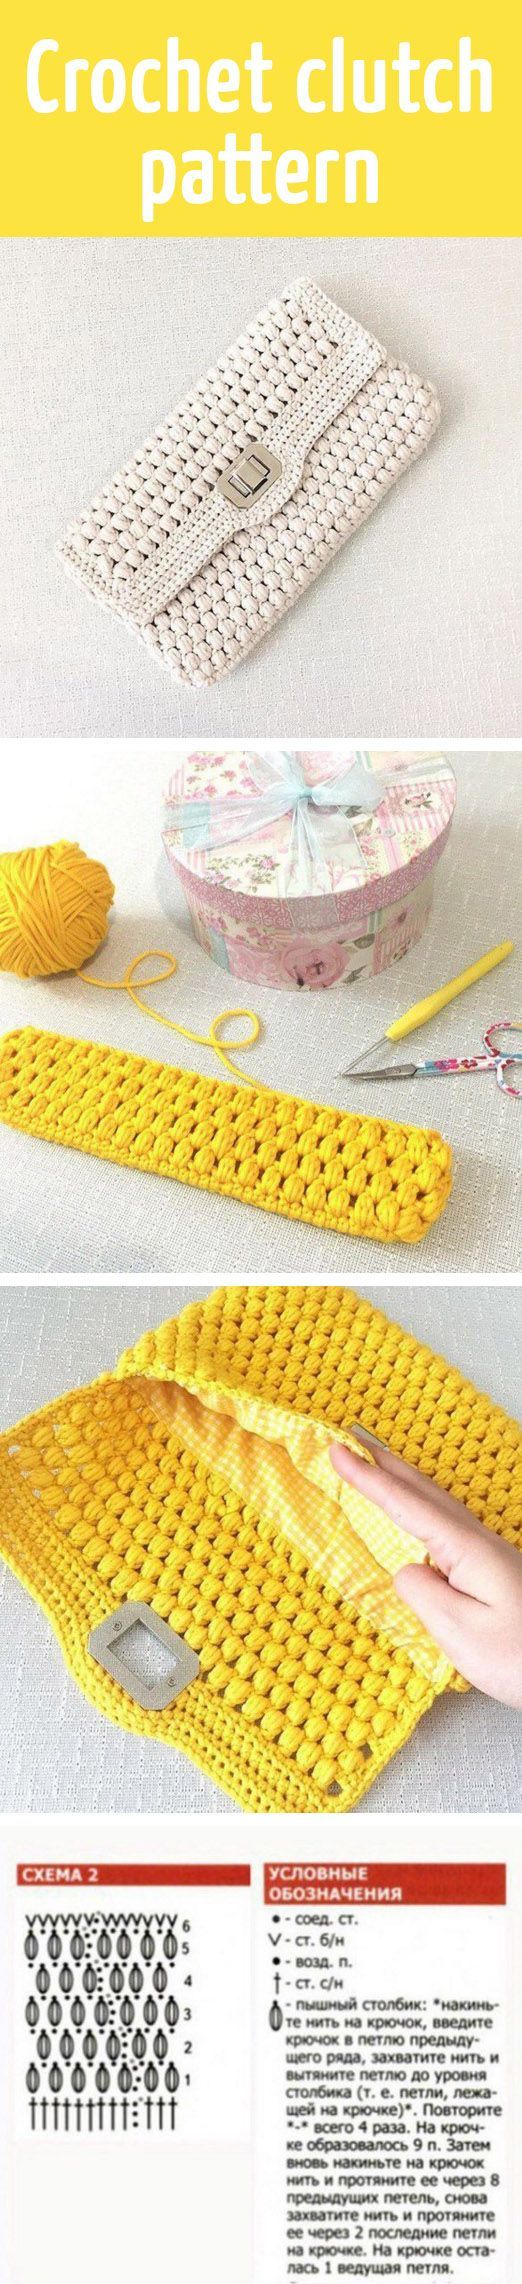 Crochet clutch pattern